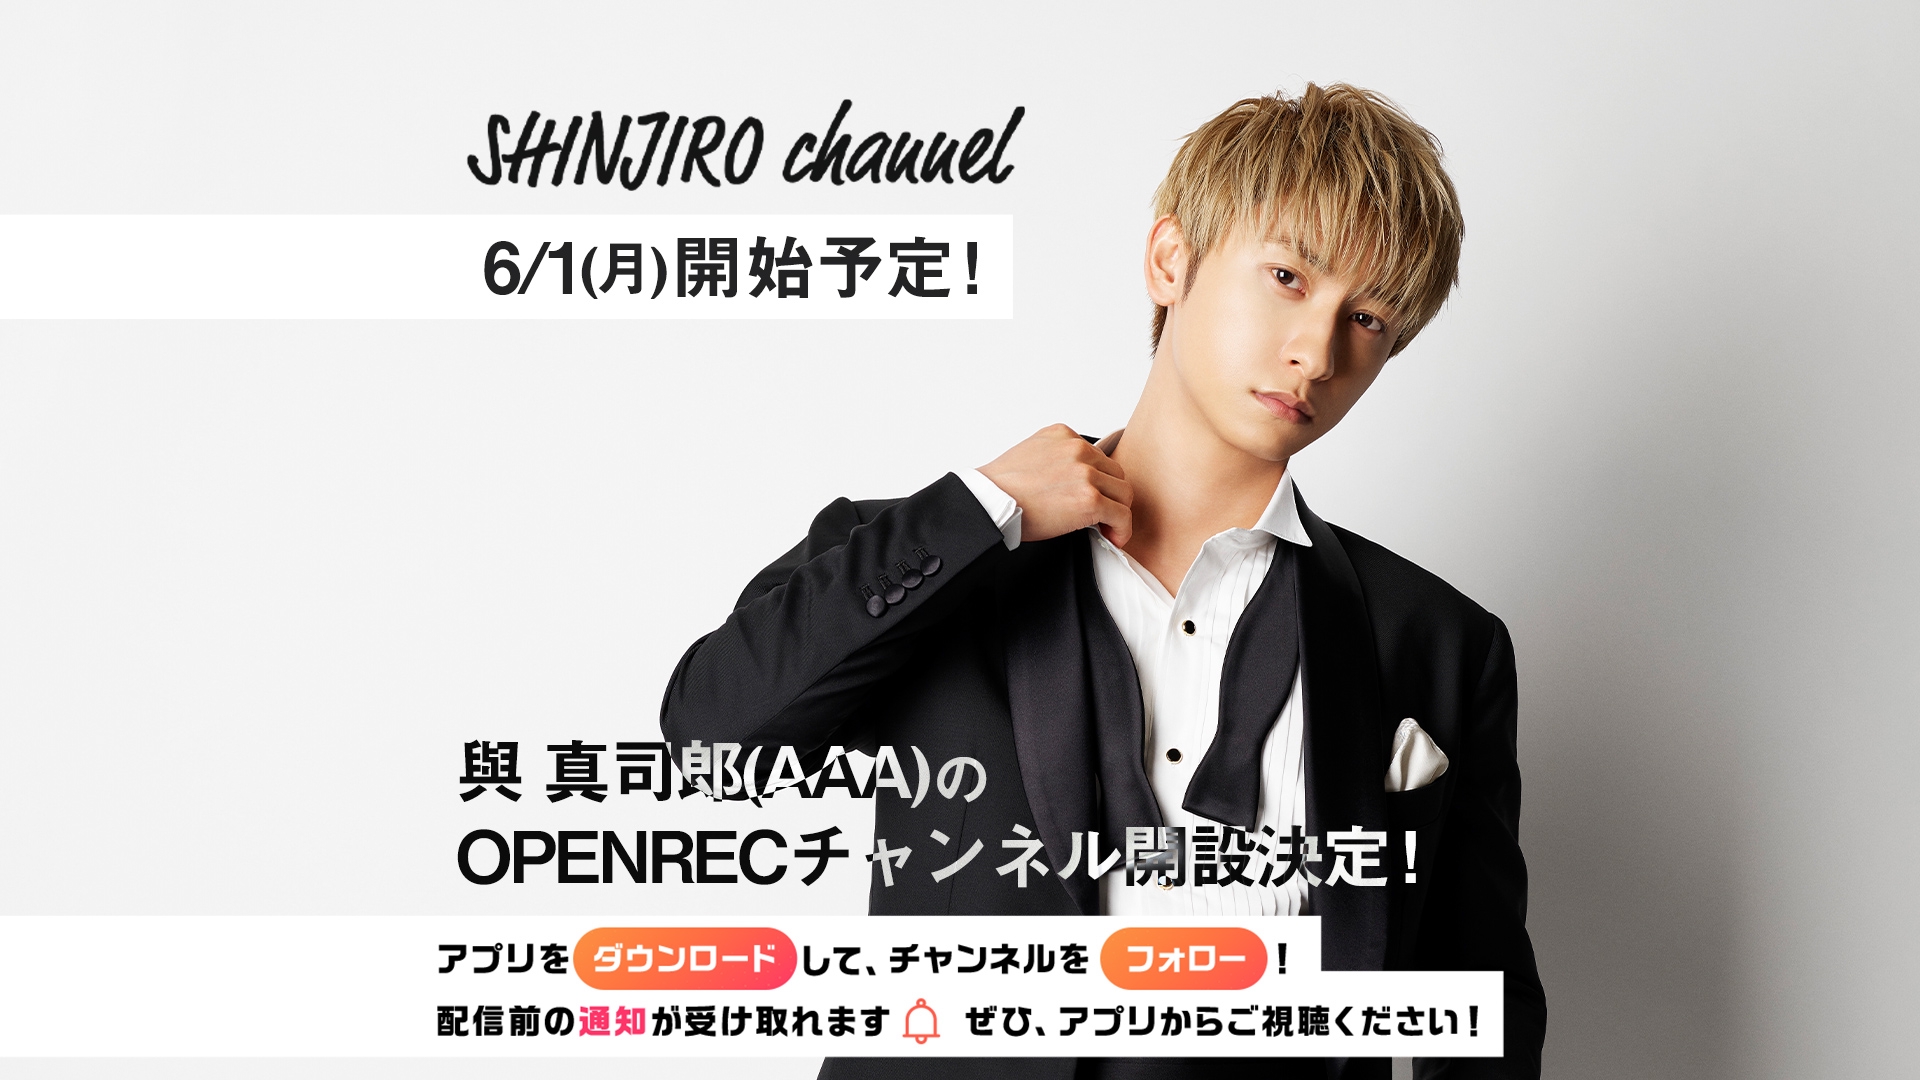 與 真司郎(AAA)さんの公式チャンネル 「SHINJIRO channel」が開設決定！ | OPENREC NEXT